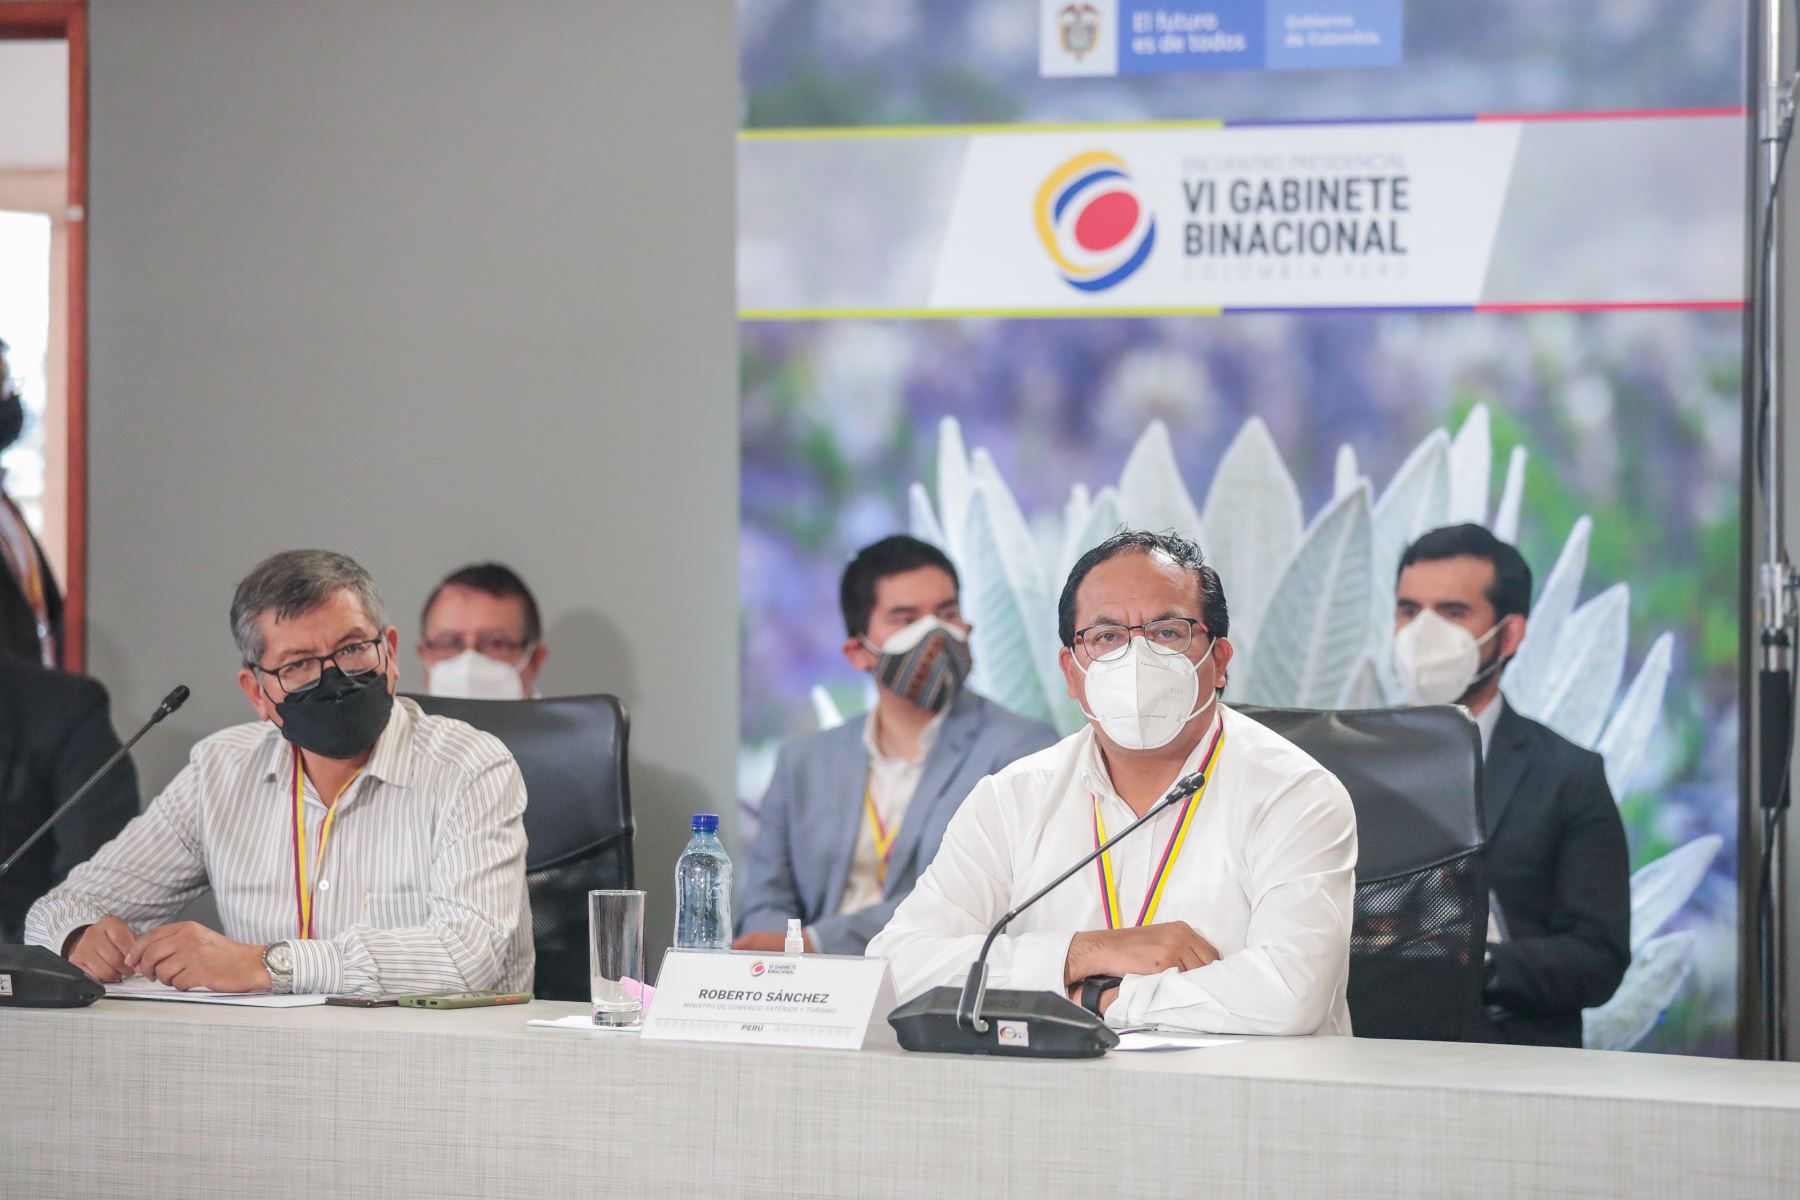 Ministro de Comercio Exterior y Turismo Roberto Sánchez, participó en el Encuentro Presidencial y VI Gabinete Binacional Perú-Colombia.
Foto: ANDINA/Presidencia Perú